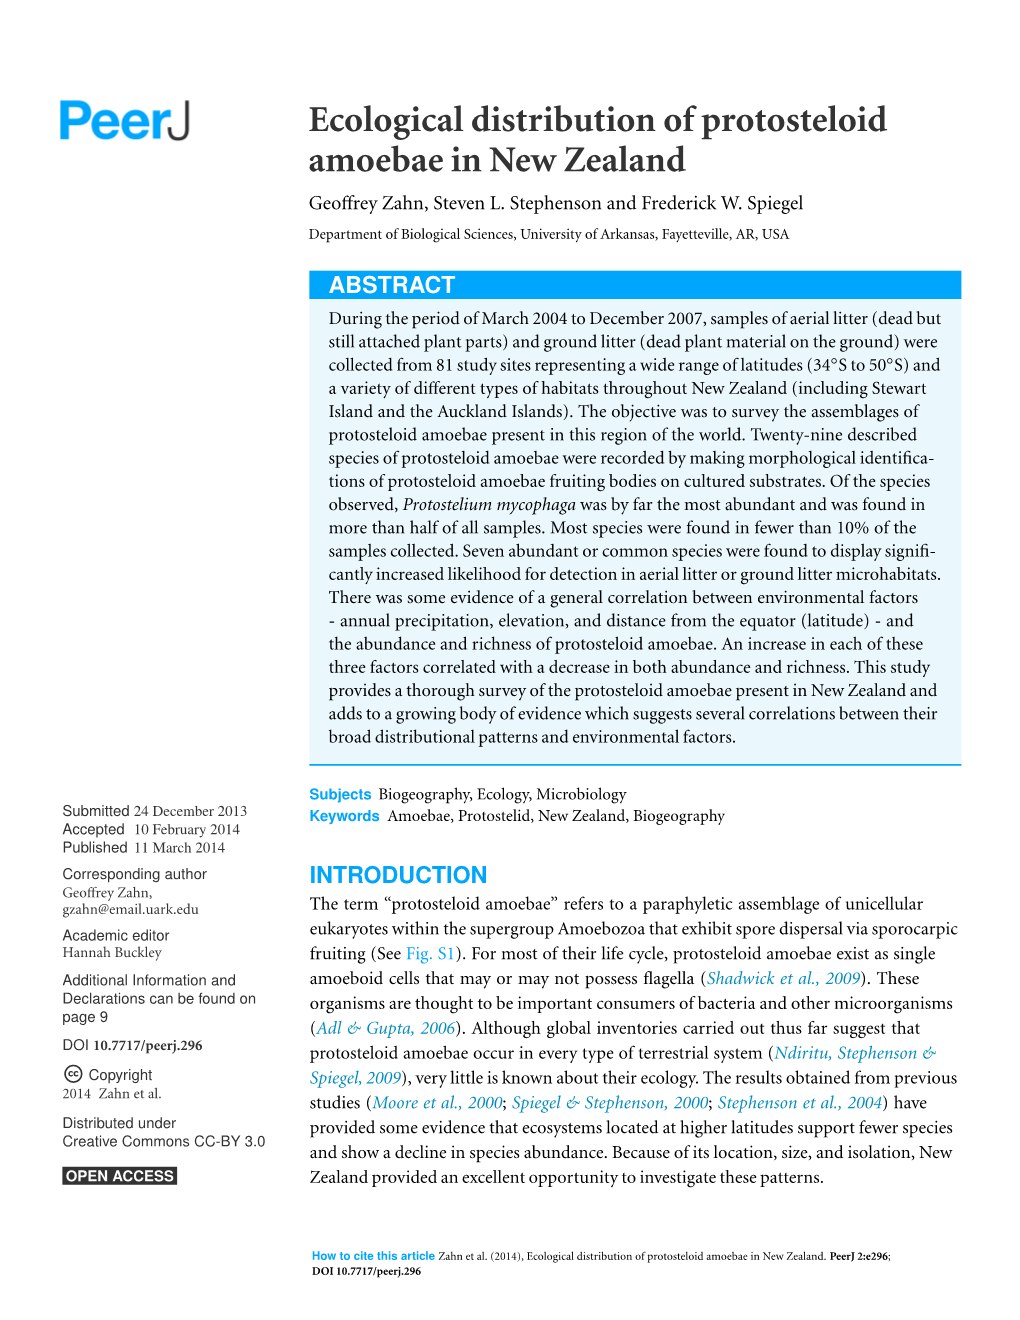 Ecological Distribution of Protosteloid Amoebae in New Zealand Geoffrey Zahn, Steven L